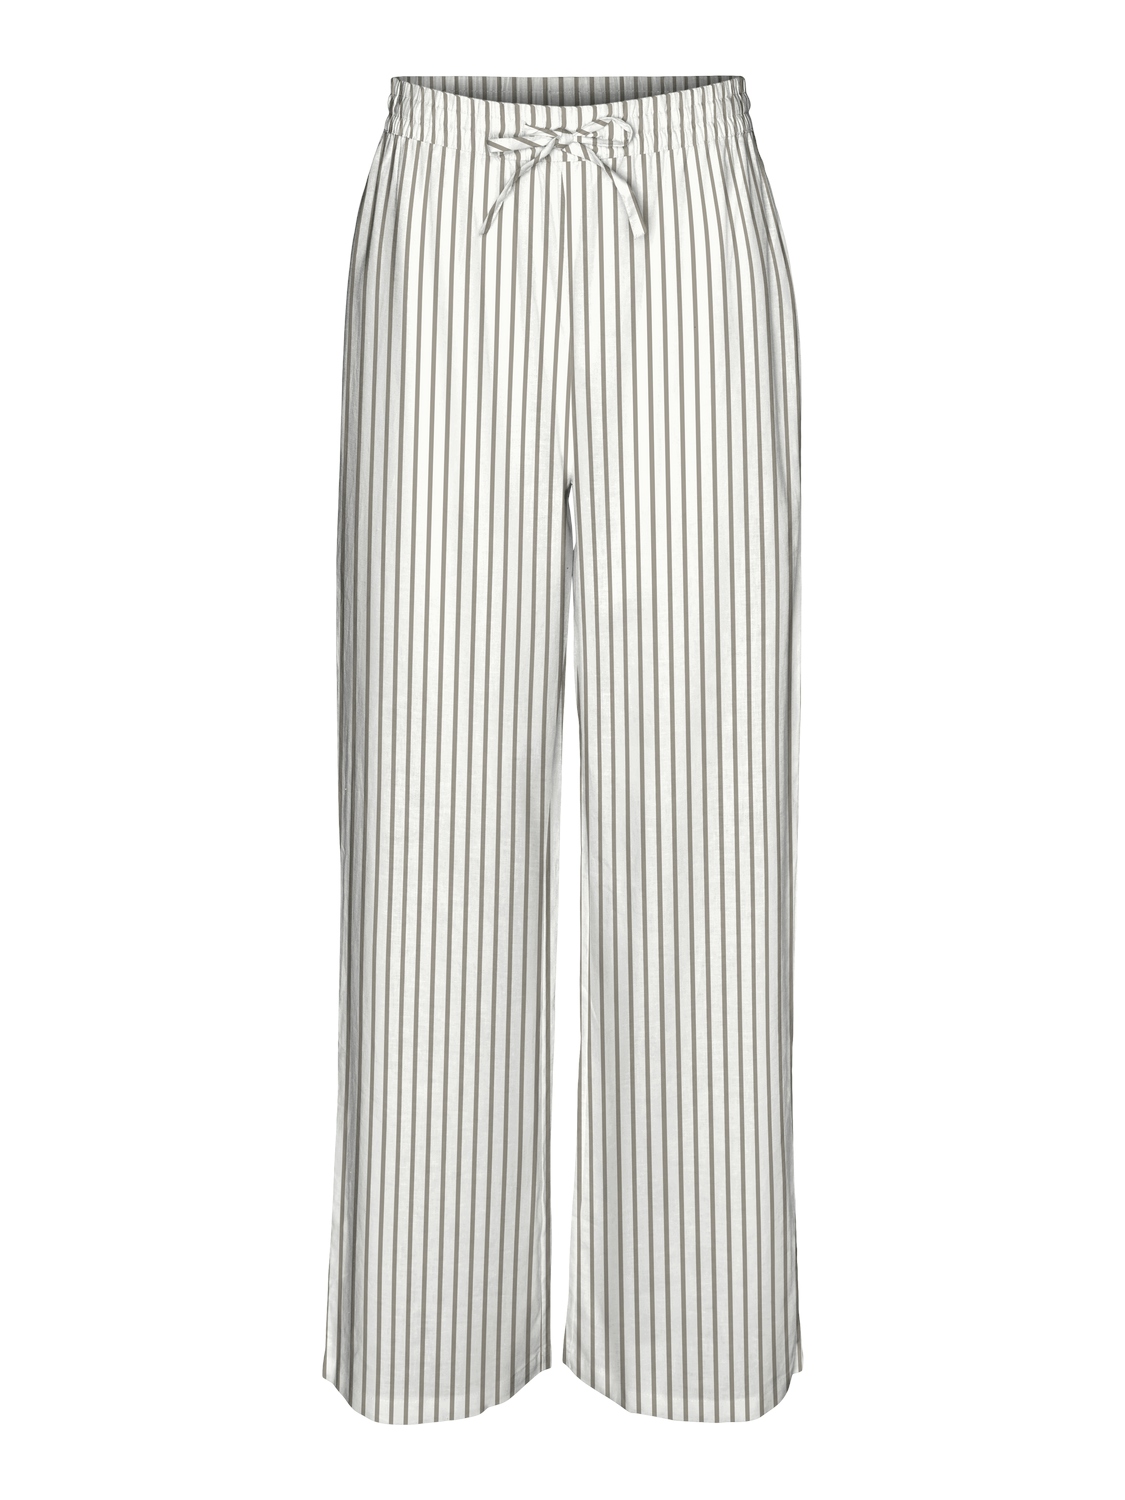 VMLINN pants Sand stripe